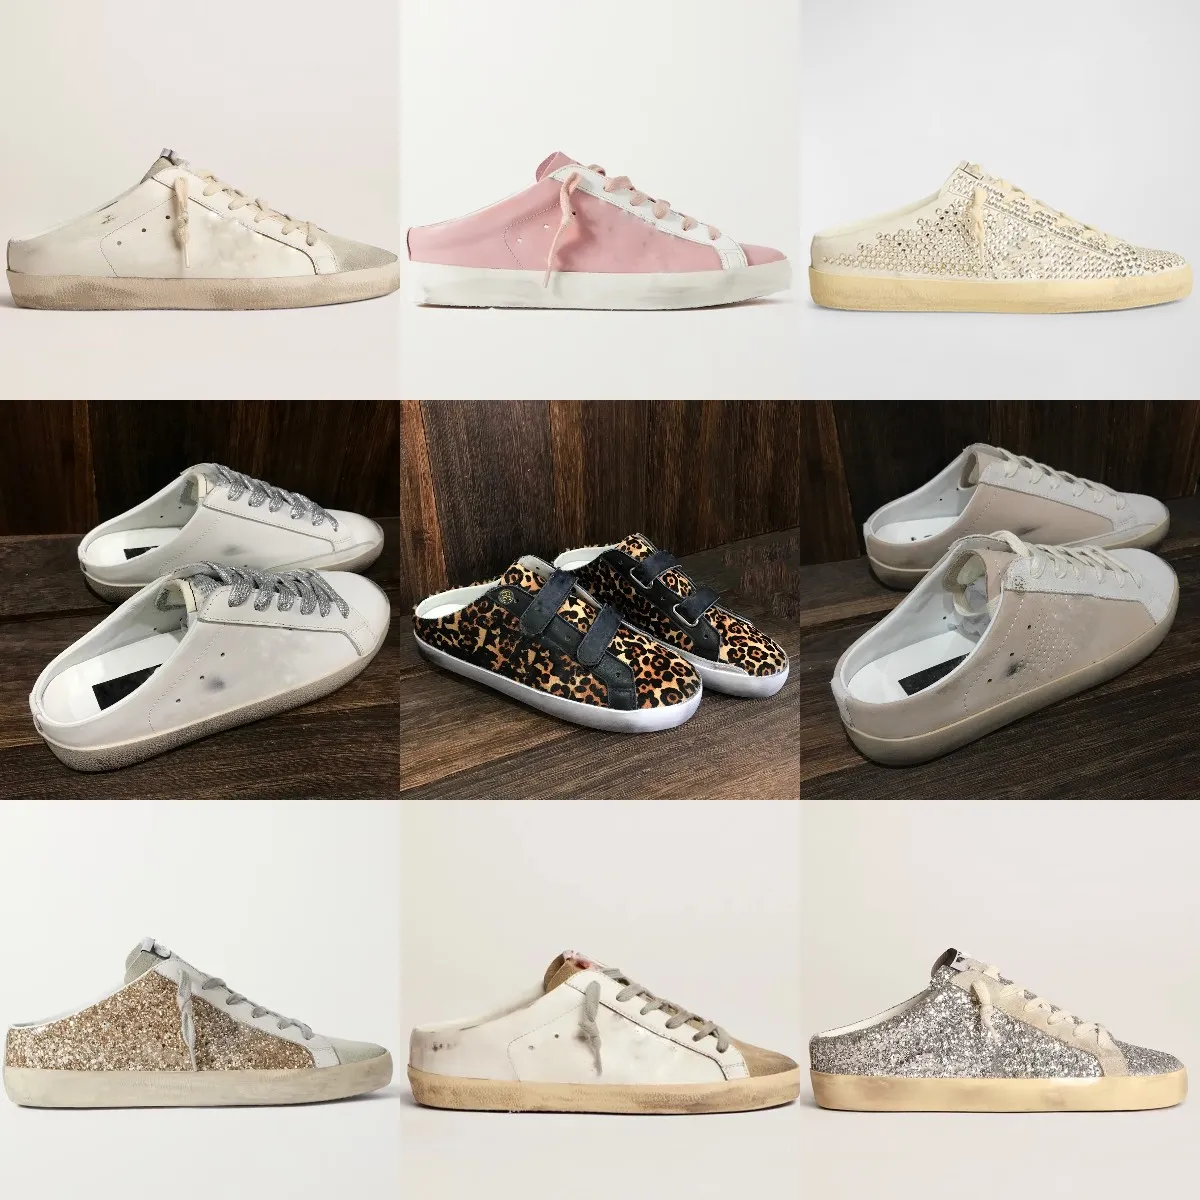 Italien Marke Golden Sneakers Sommer Frauen Sandalen Pailletten Klassiker weiß do alte schmutzige Schuhe Designer Lederstar Sabot Slipper Freizeitschuhe